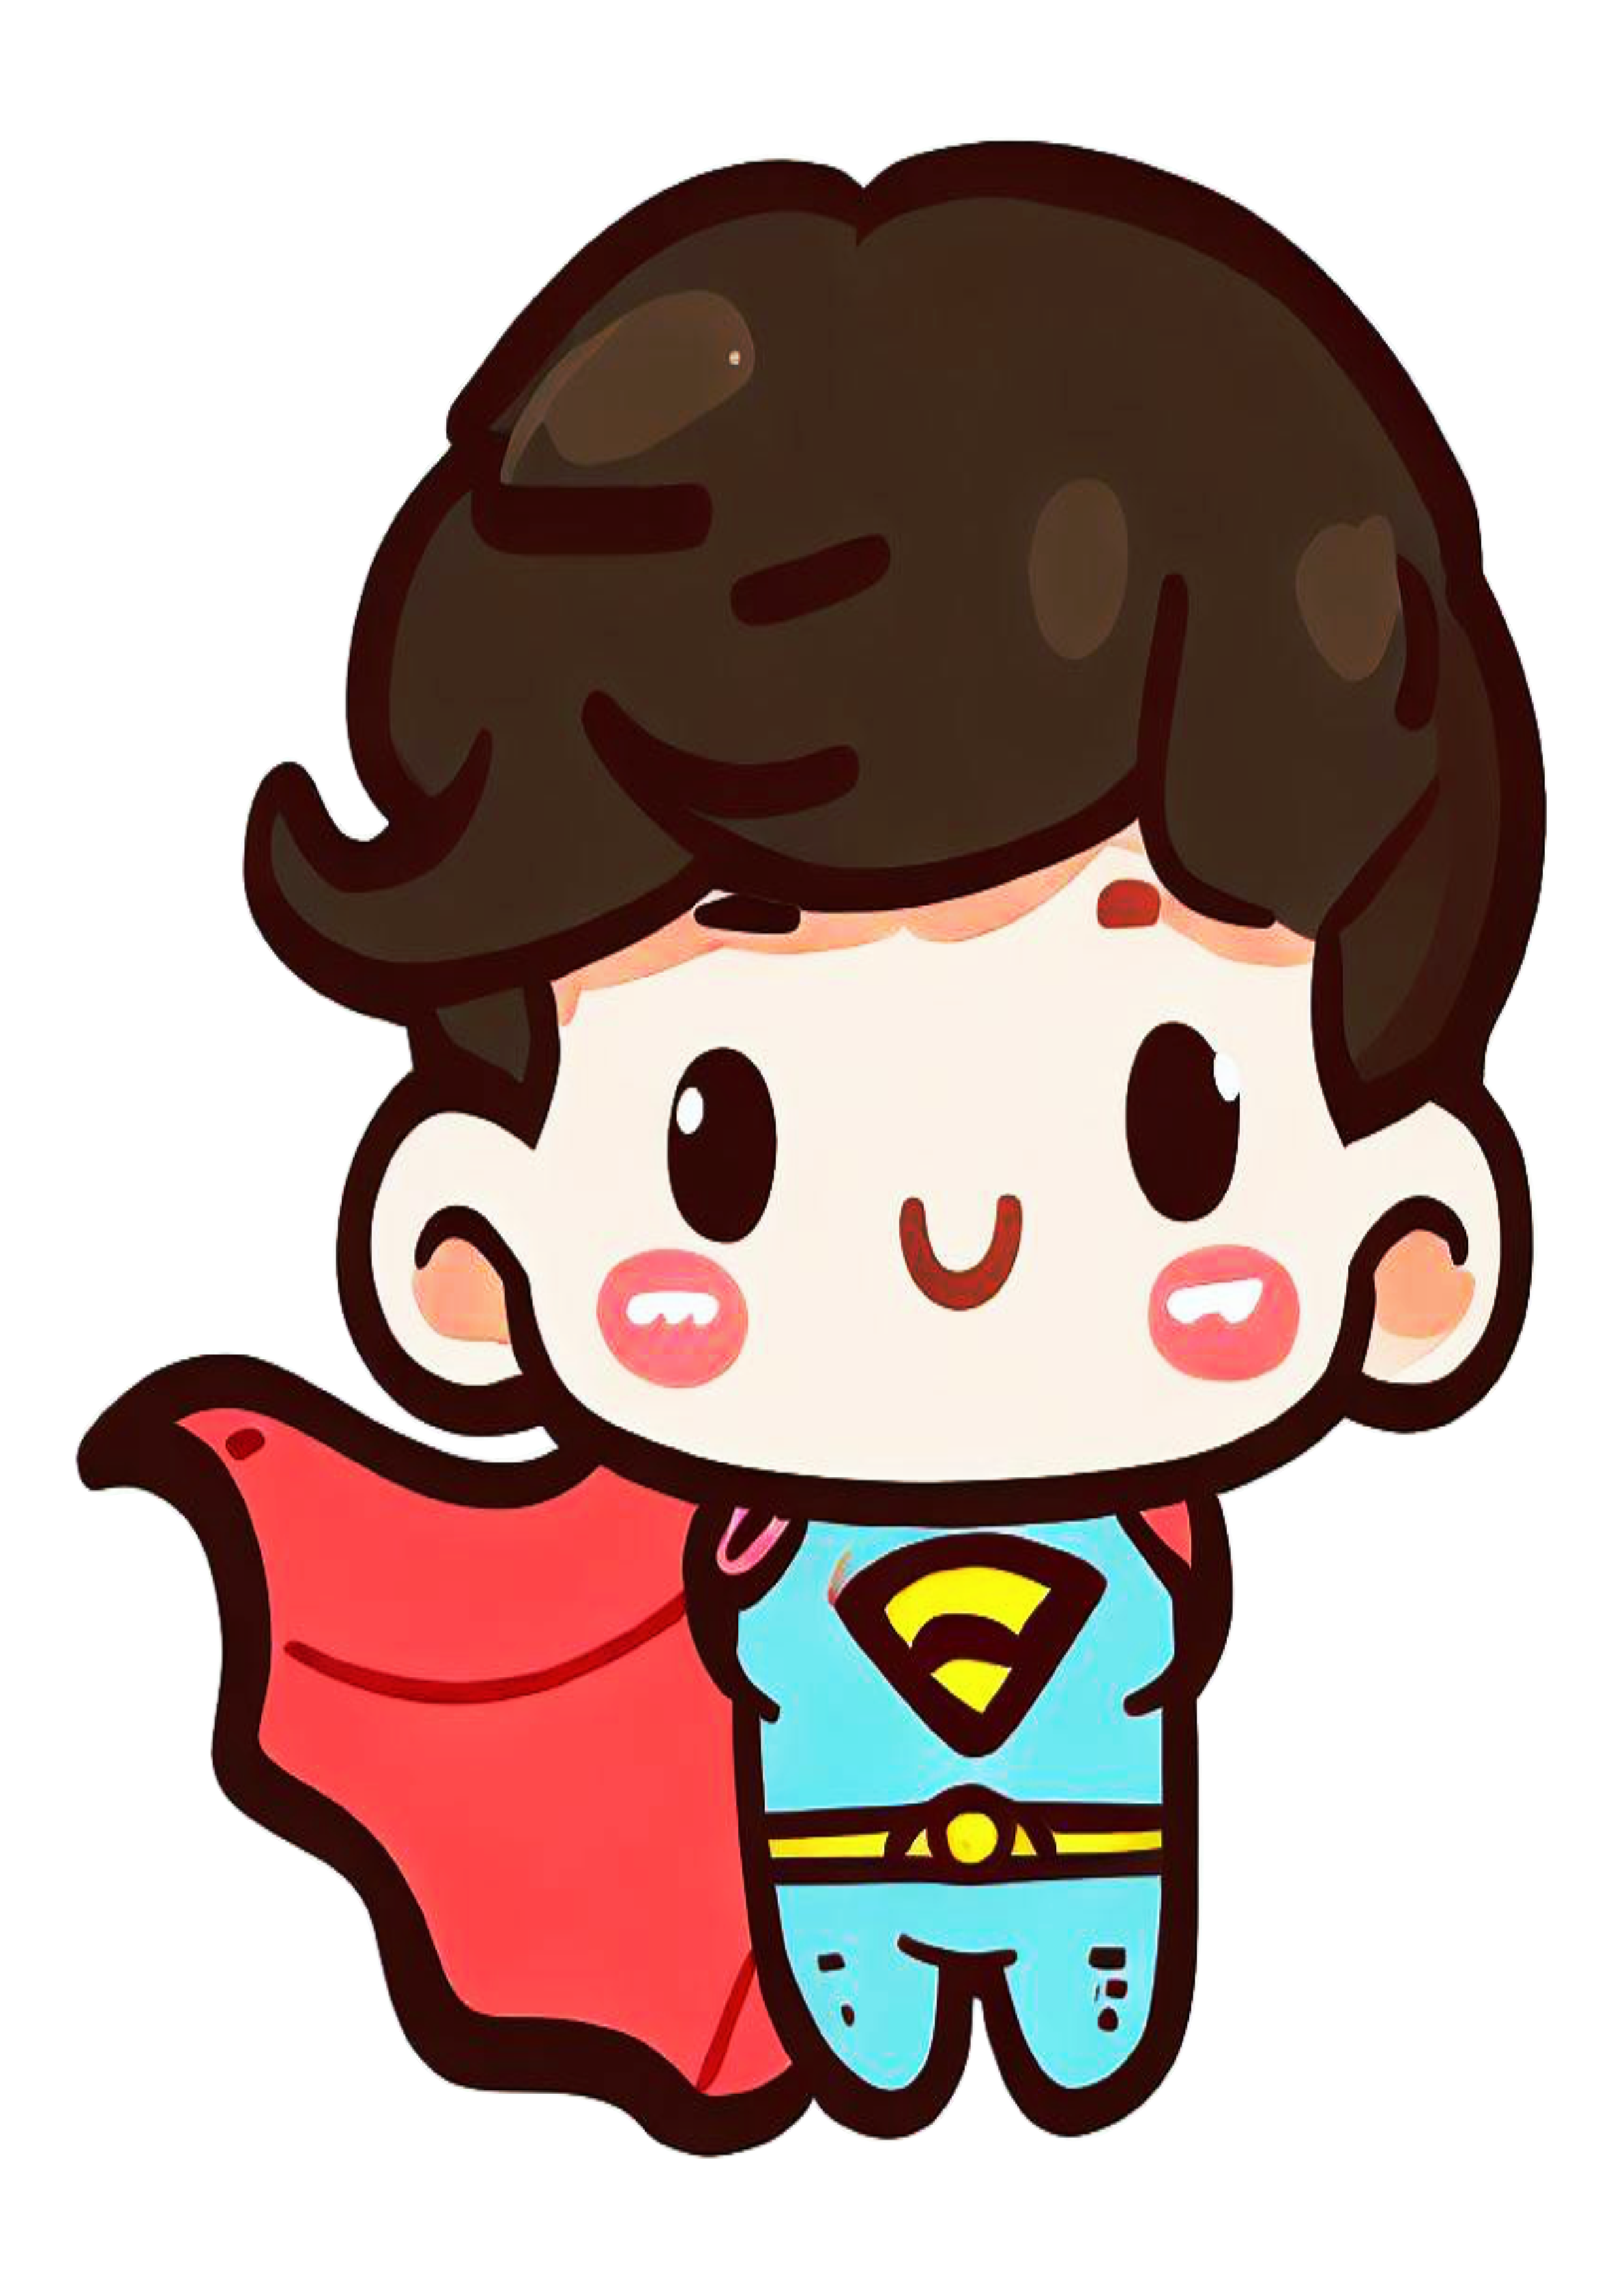 Super homem baby fofinho cute superman heroi fantasia infantil bonitinho ilustração desenho animado png